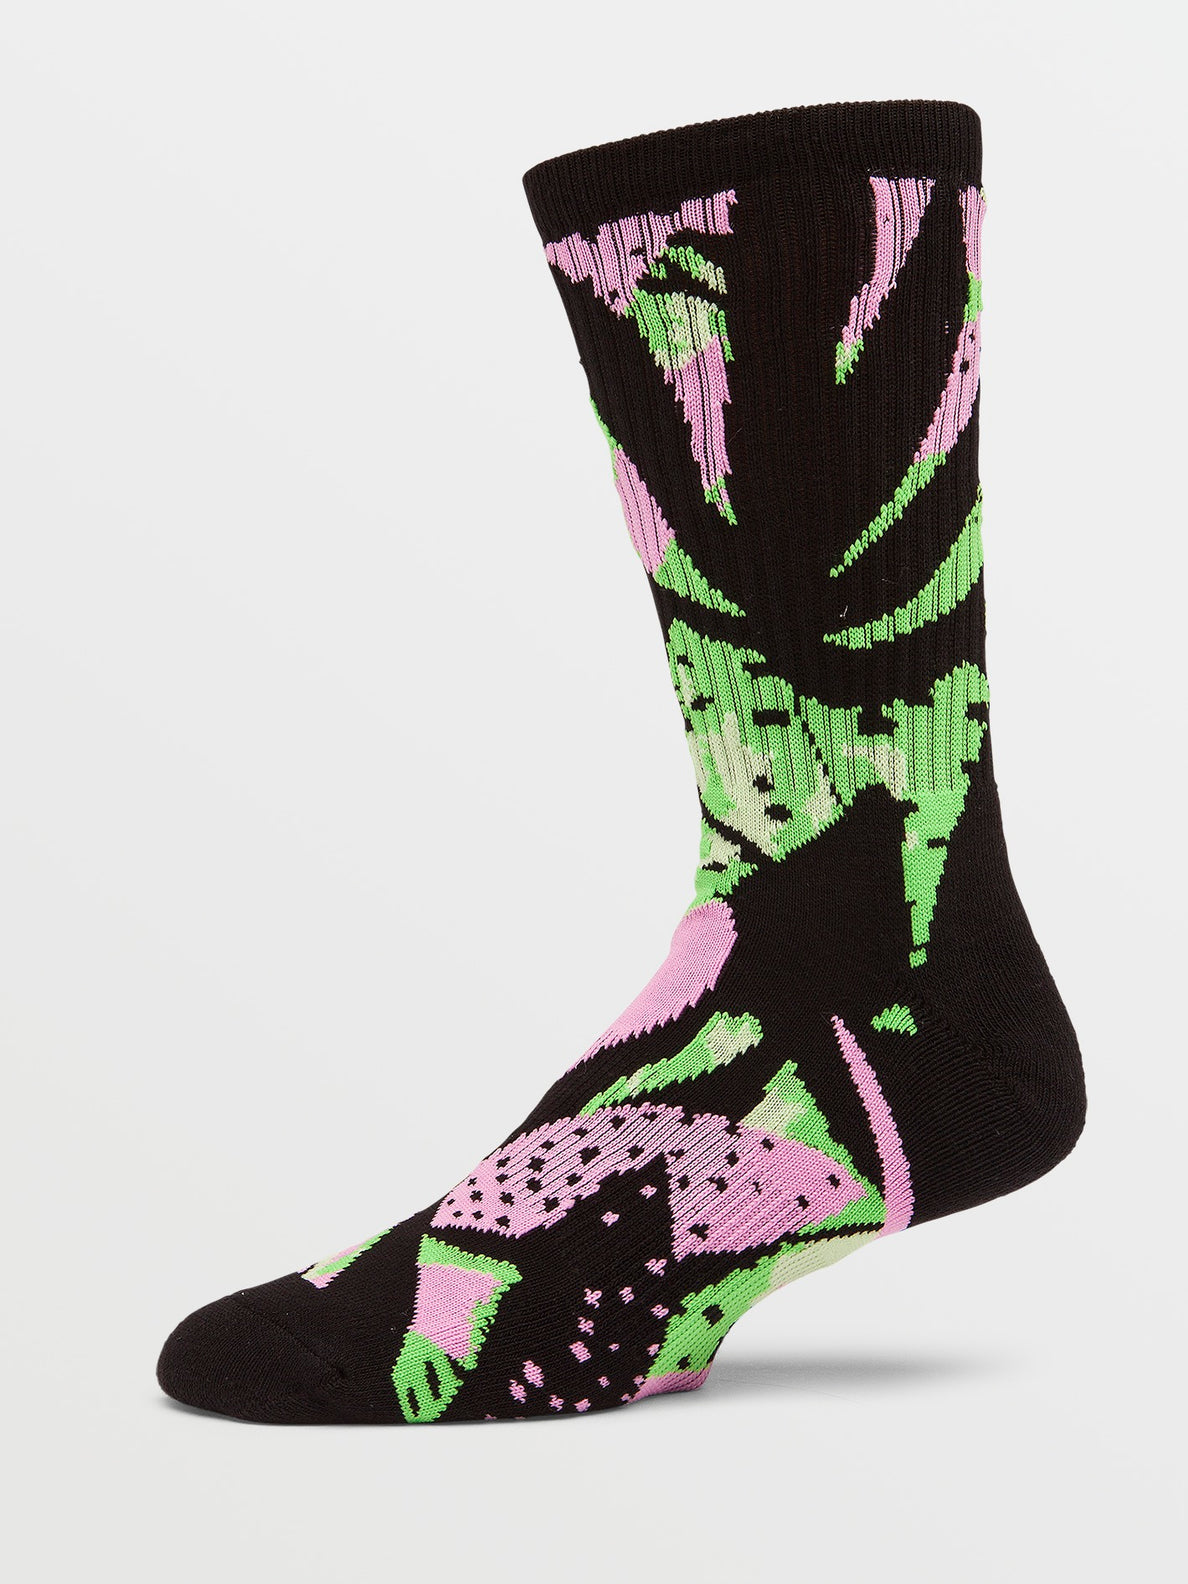 Stoney Shred Socks - Poison Green